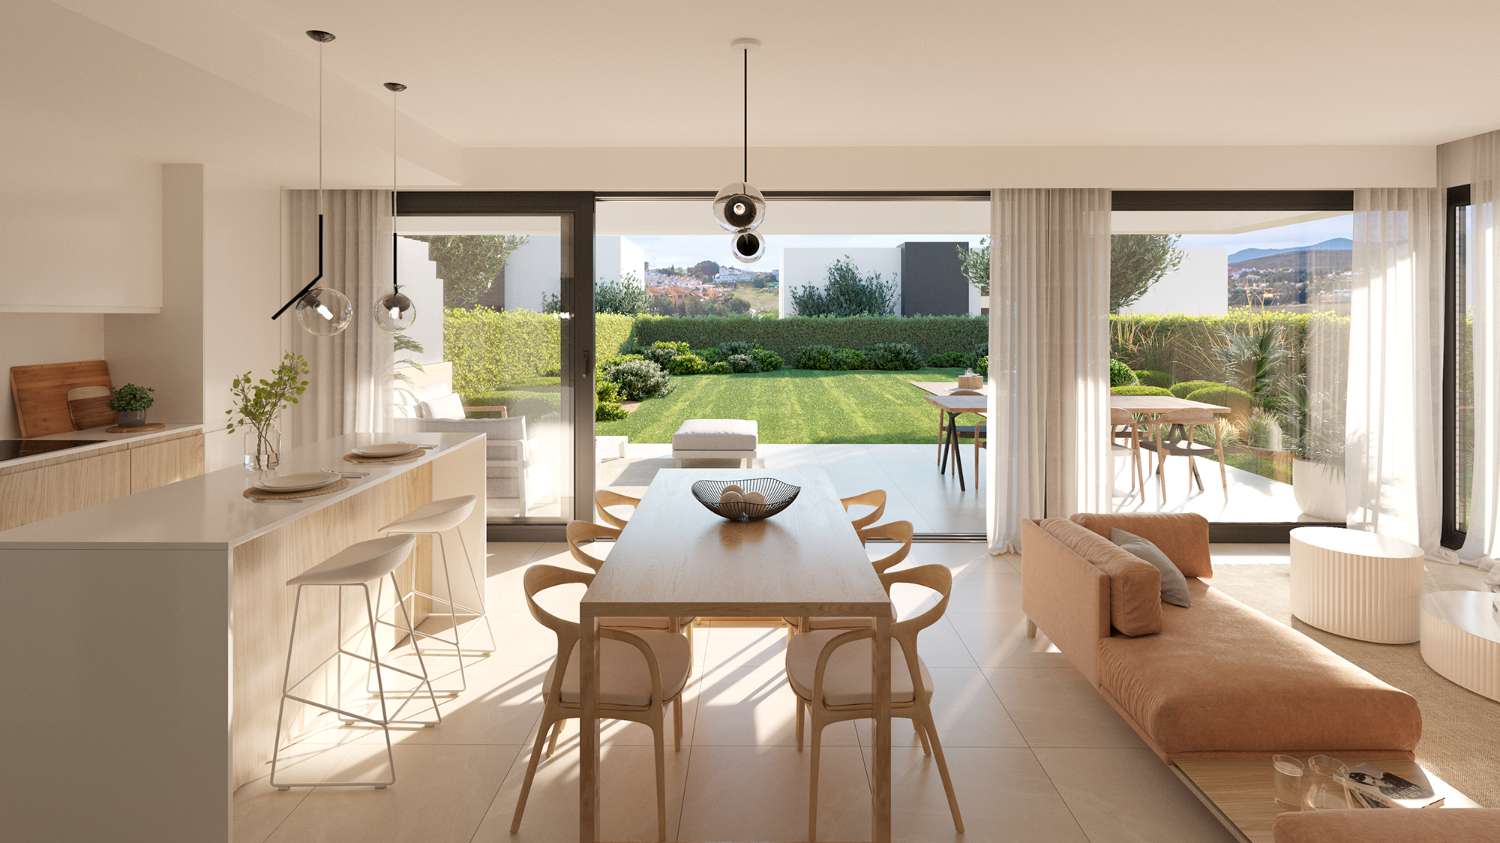 شعور رومانسي! منزل بناء جديد مع سطح مفتوح وسرداب بسعر 714000 يورو. تدفئة تحت البلاط.